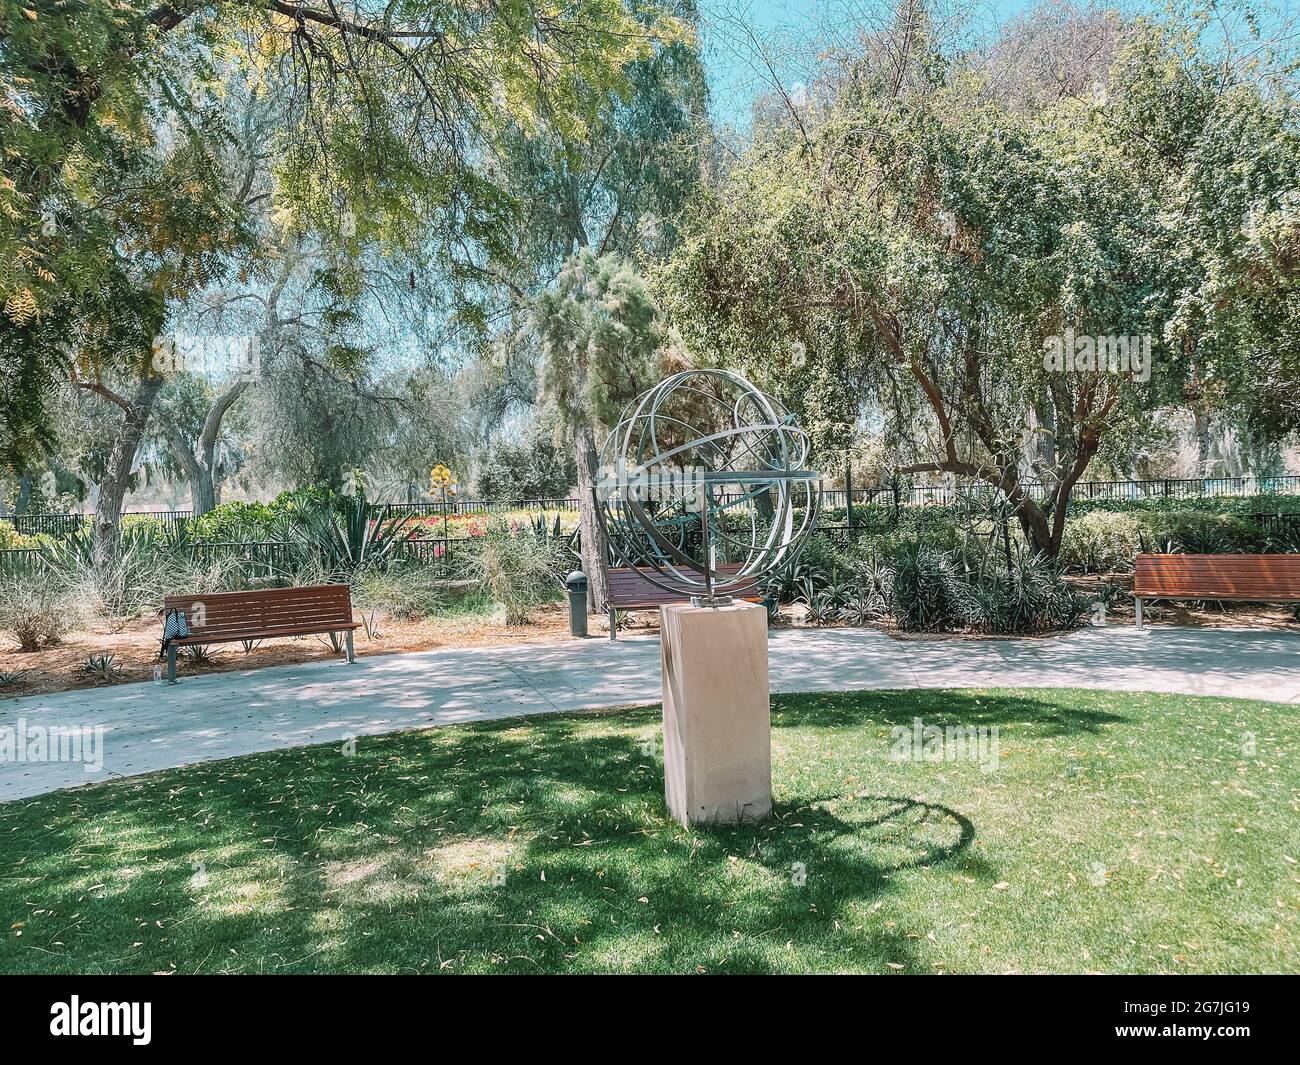 Parque urbano relajante con un diseño moderno | Atracciones familiares | Parque Umm al Emarat en Abu Dhabi, Emiratos Árabes Unidos Foto de stock